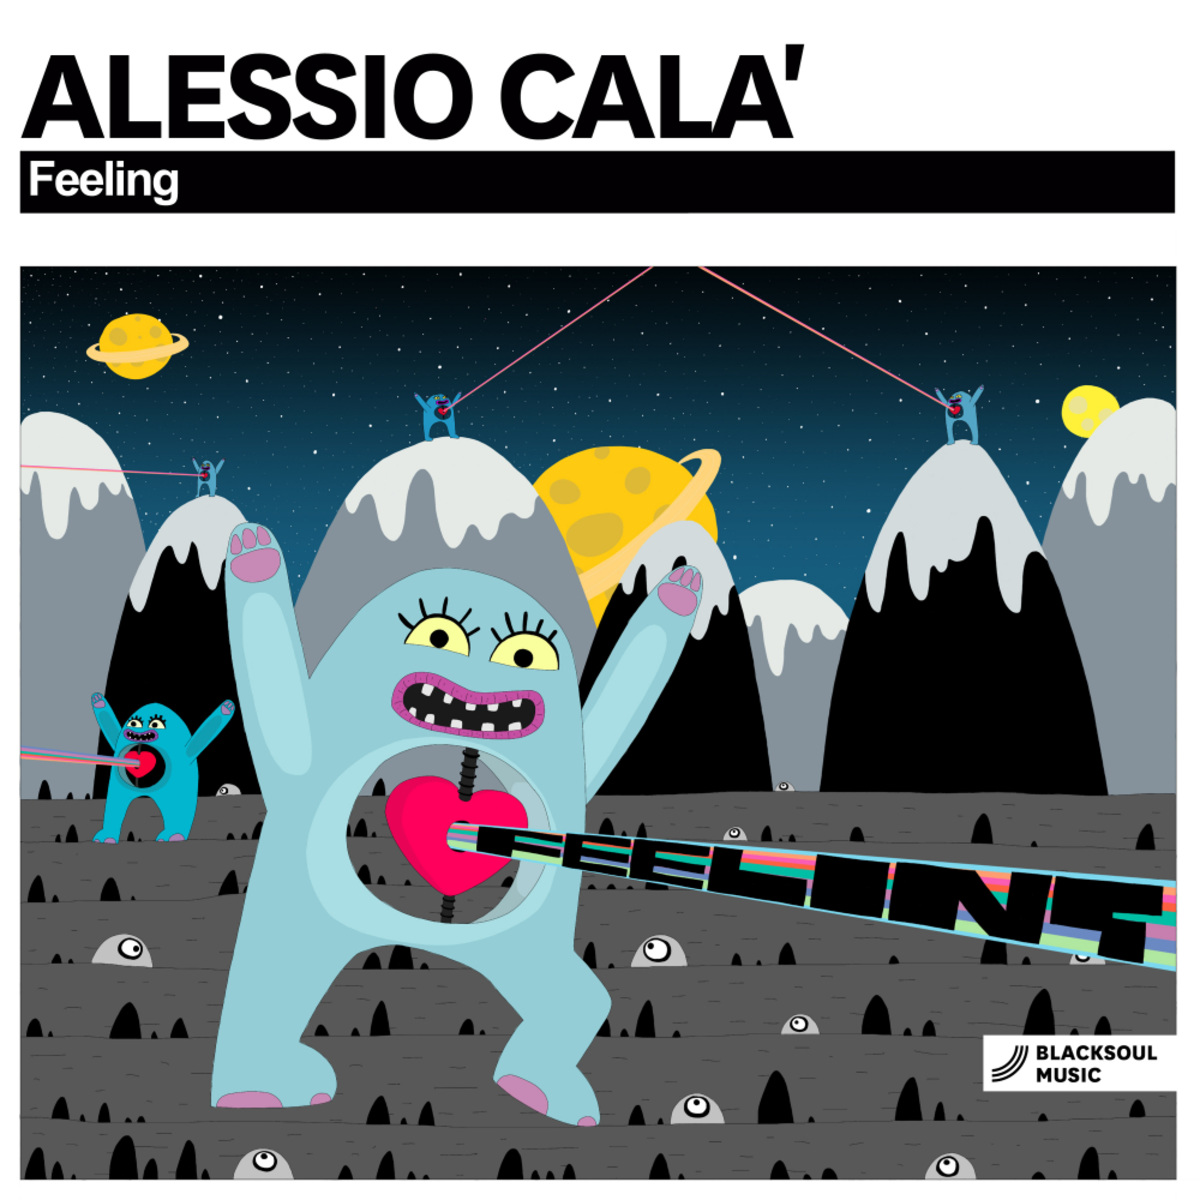 Alessio Cala' - Feeling / Blacksoul Music